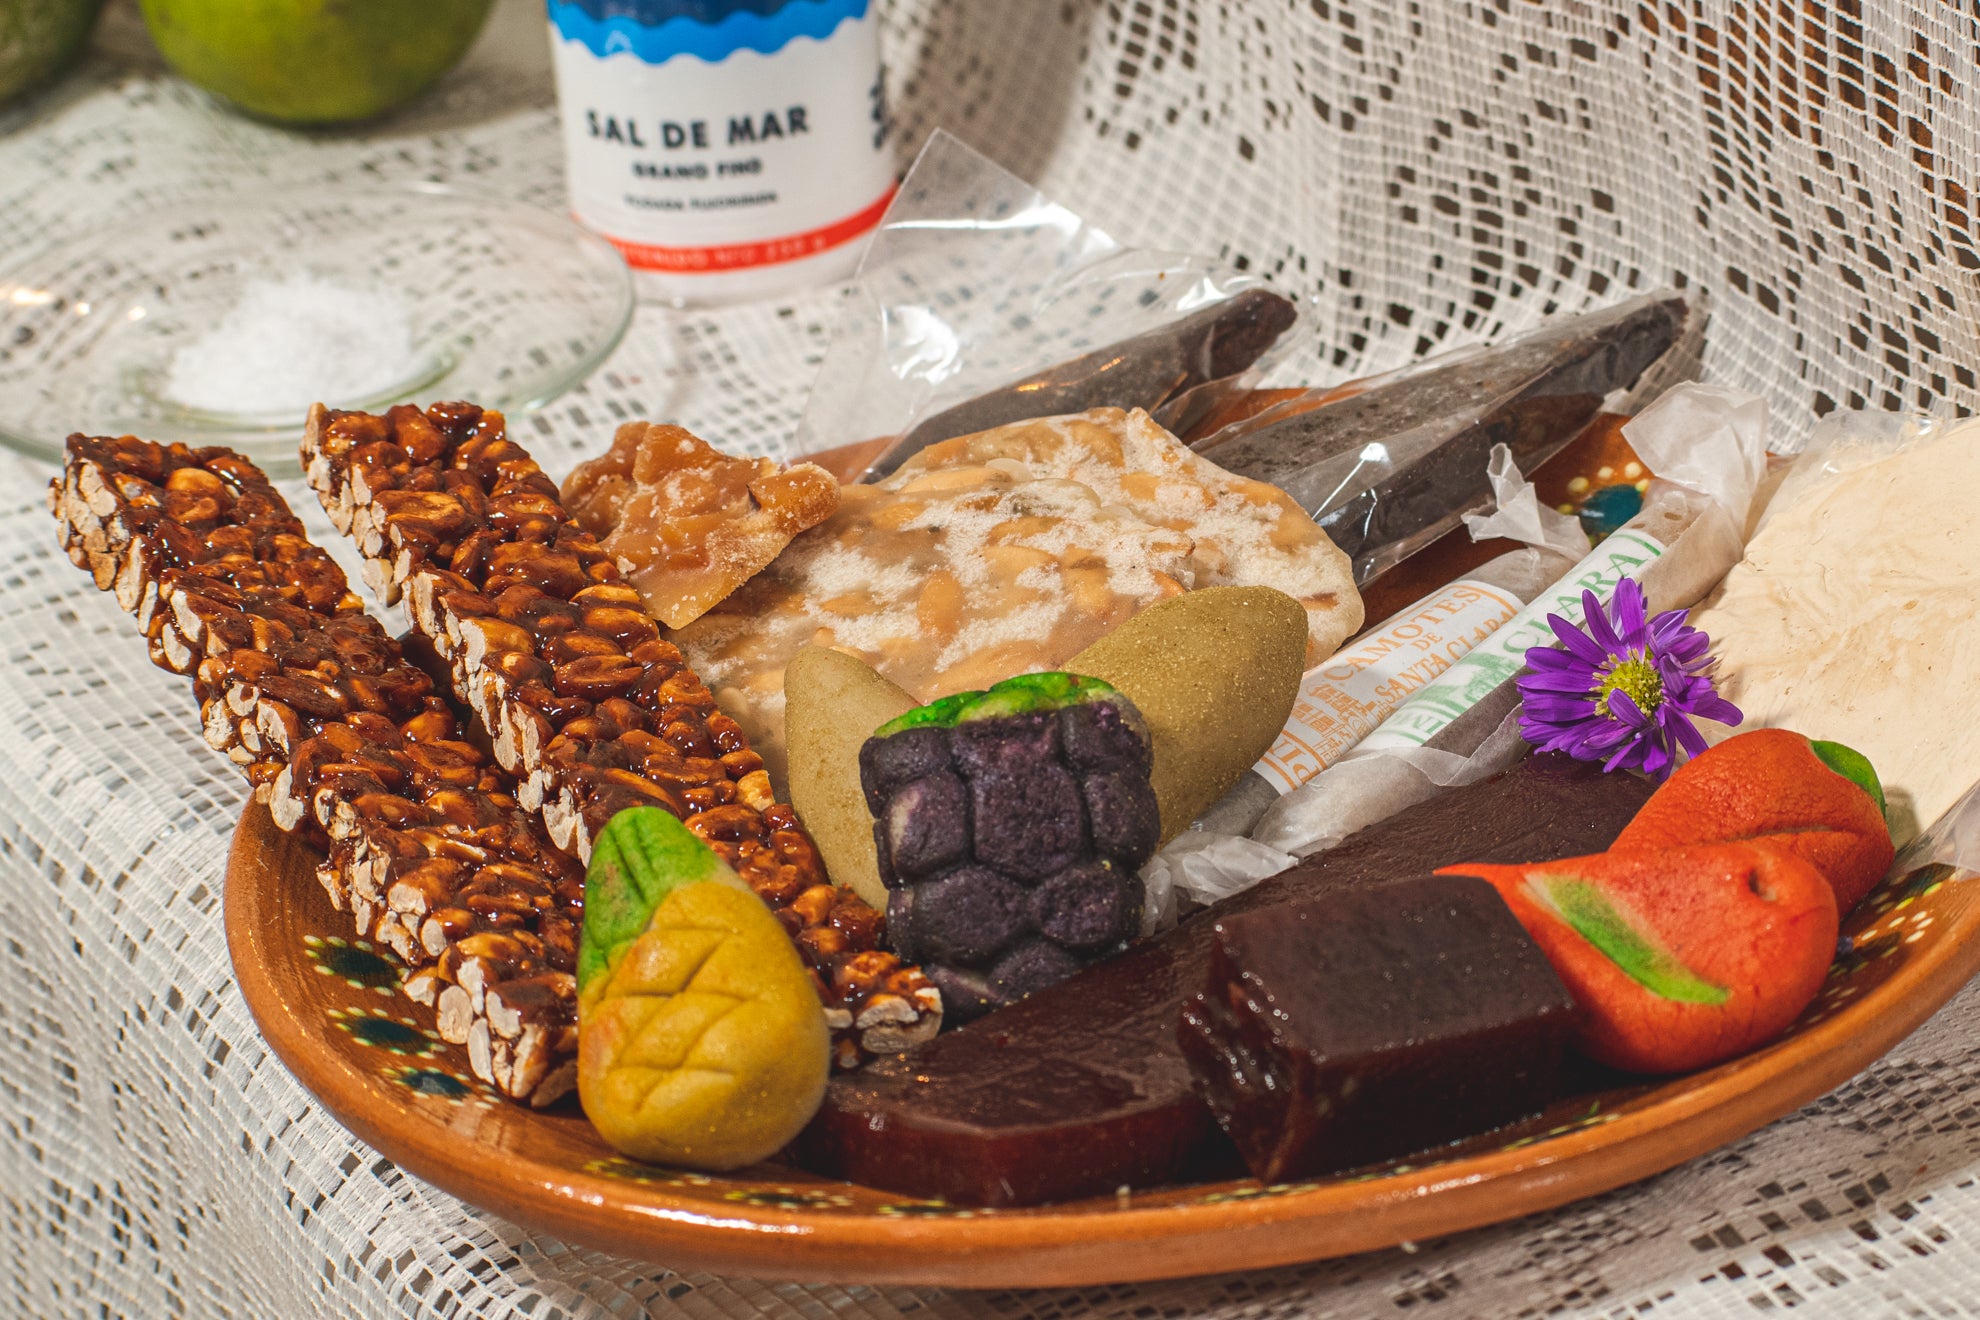 Dulces típicos mexicanos que alegran las fiestas – SAL ROCHE